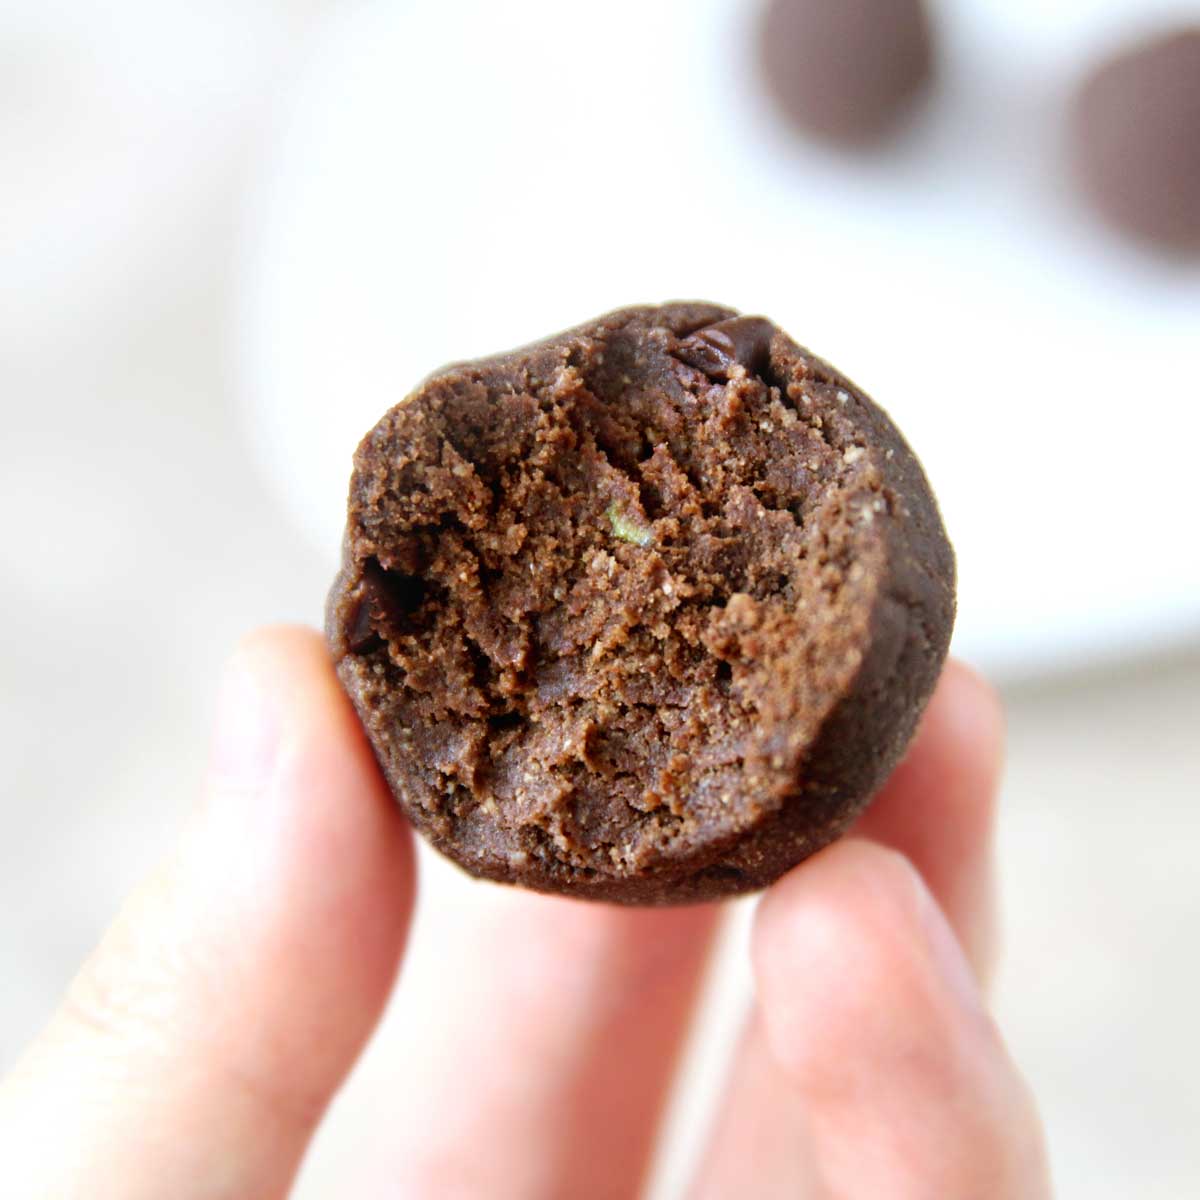 How to Make 3-Ingredient Keto Chocolate Bars (Sugarfree, Vegan) - chocolate bars